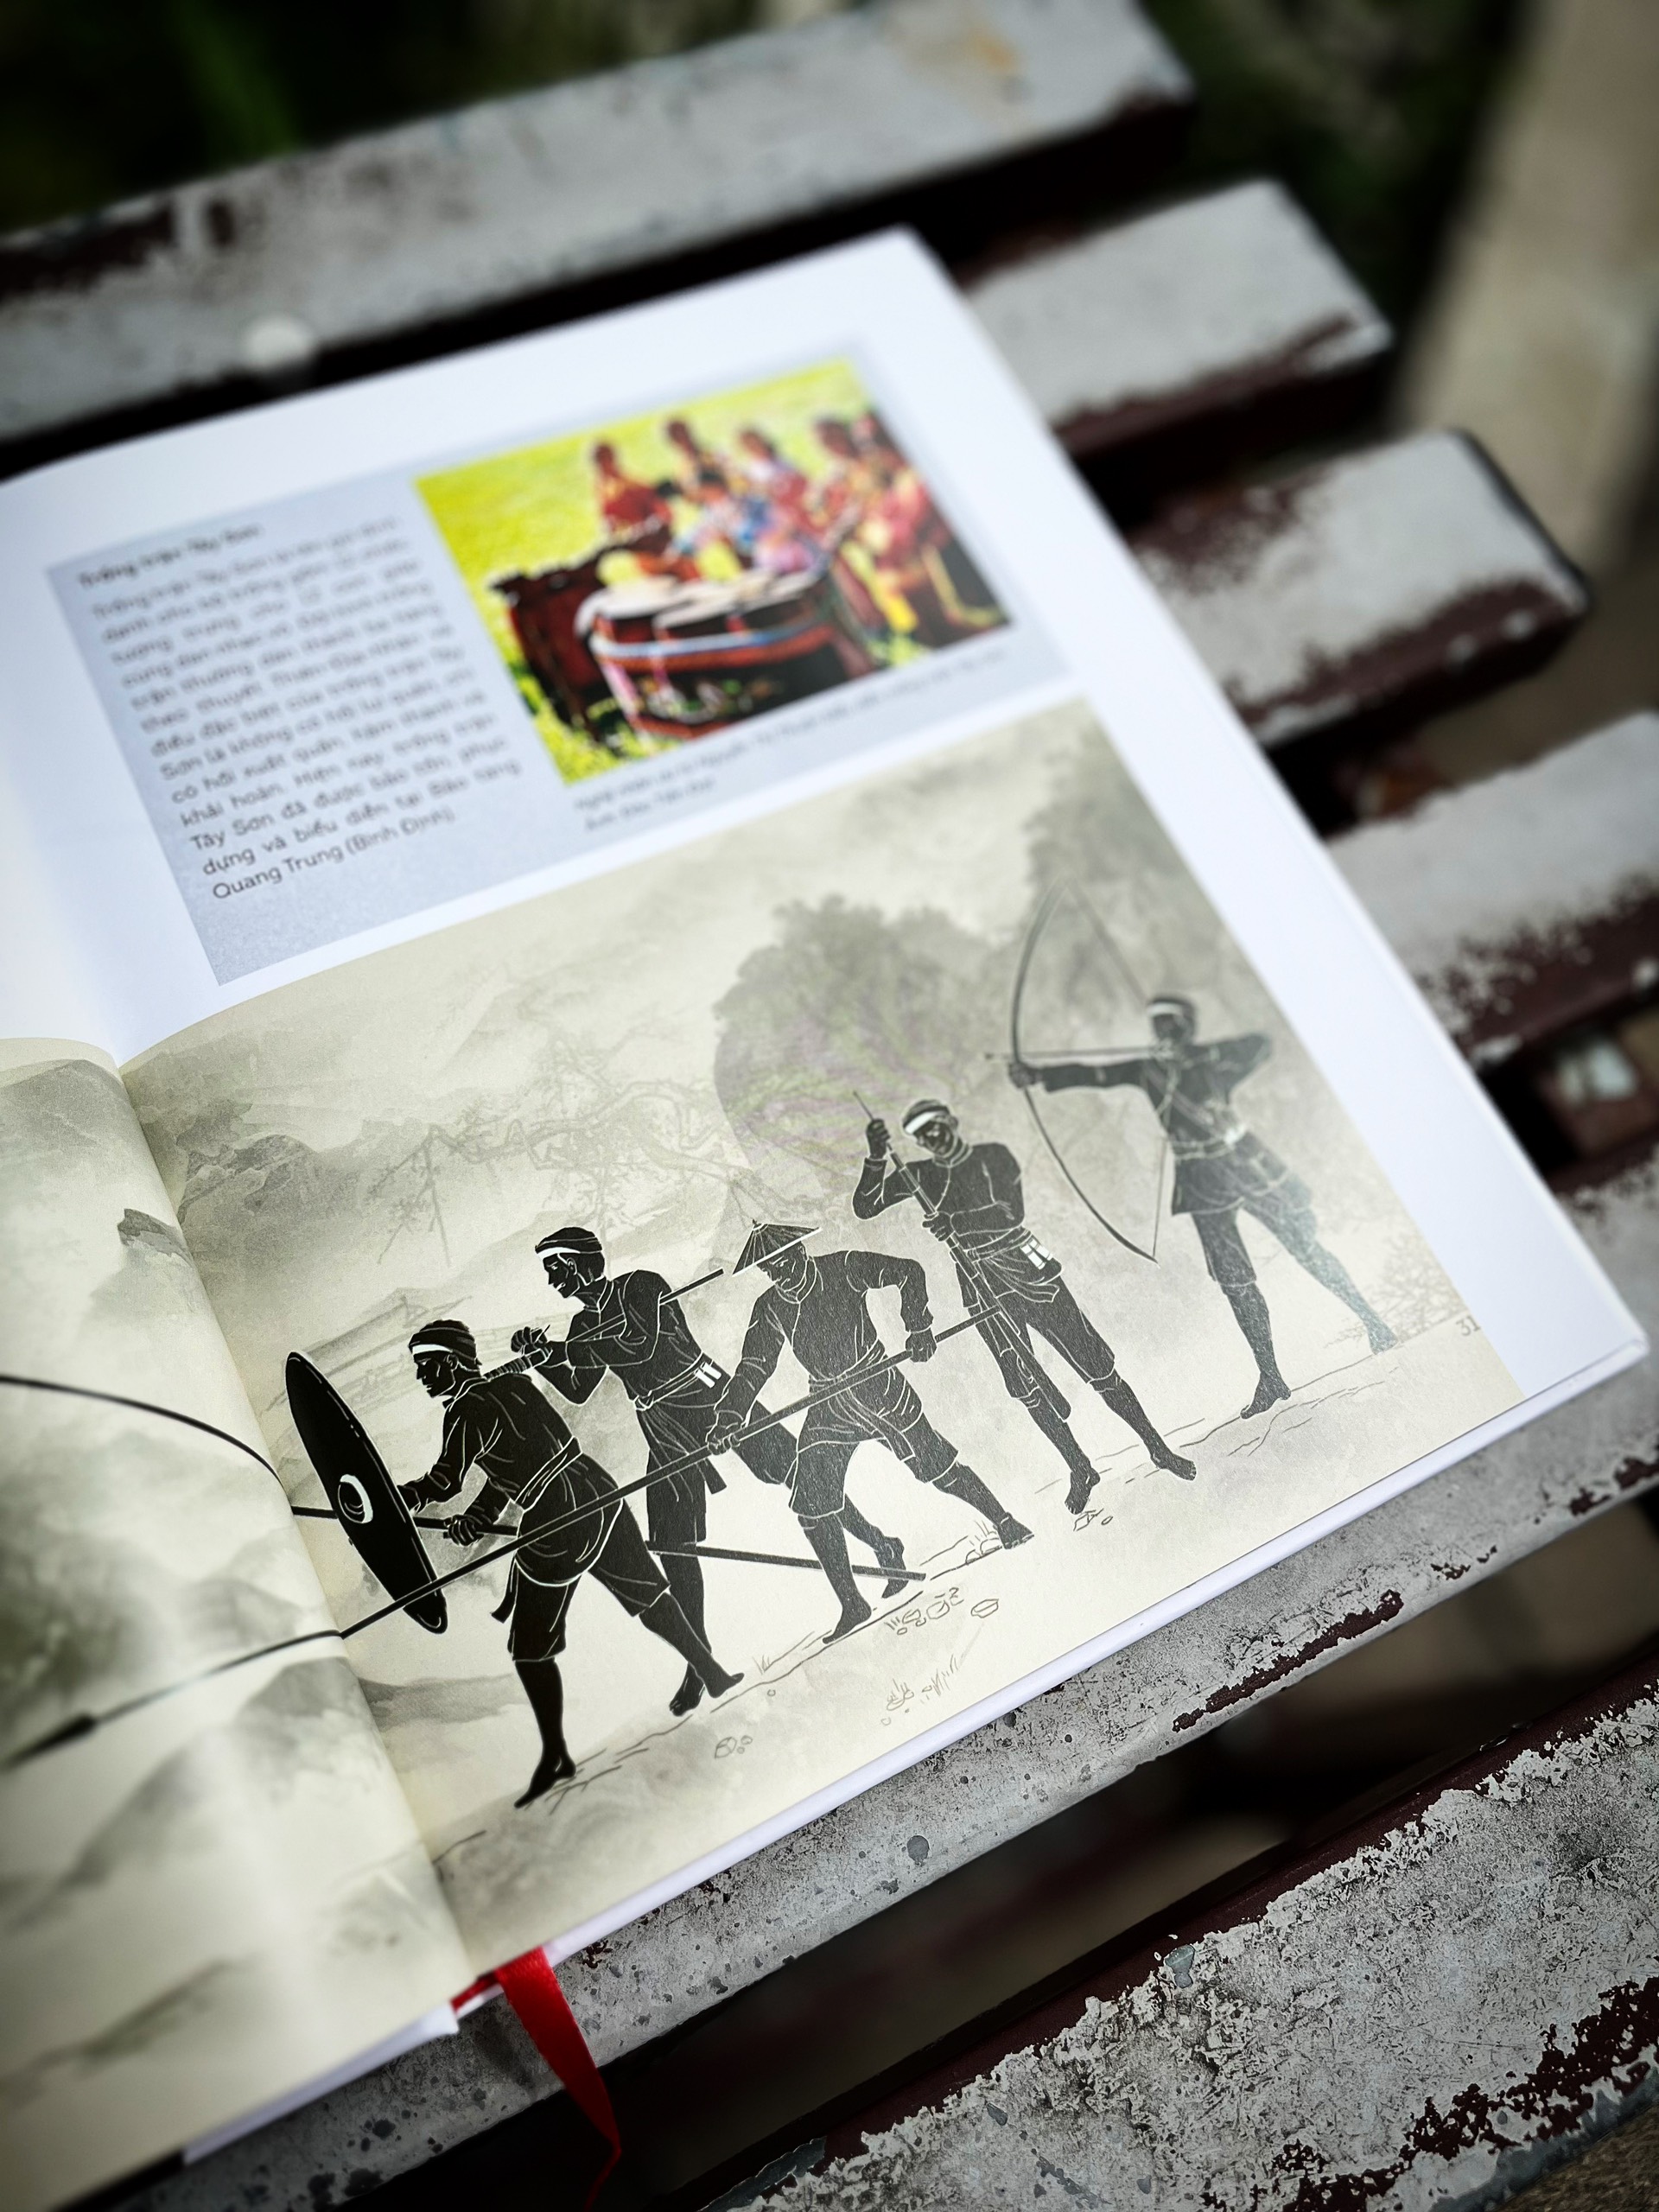 Nội dung được thể hiện bằng hình ảnh trong Cuốn sách “Quân đội Tây Sơn” của tác giả Đào Nguyên Khánh. Ảnh: Nhà xuất bản